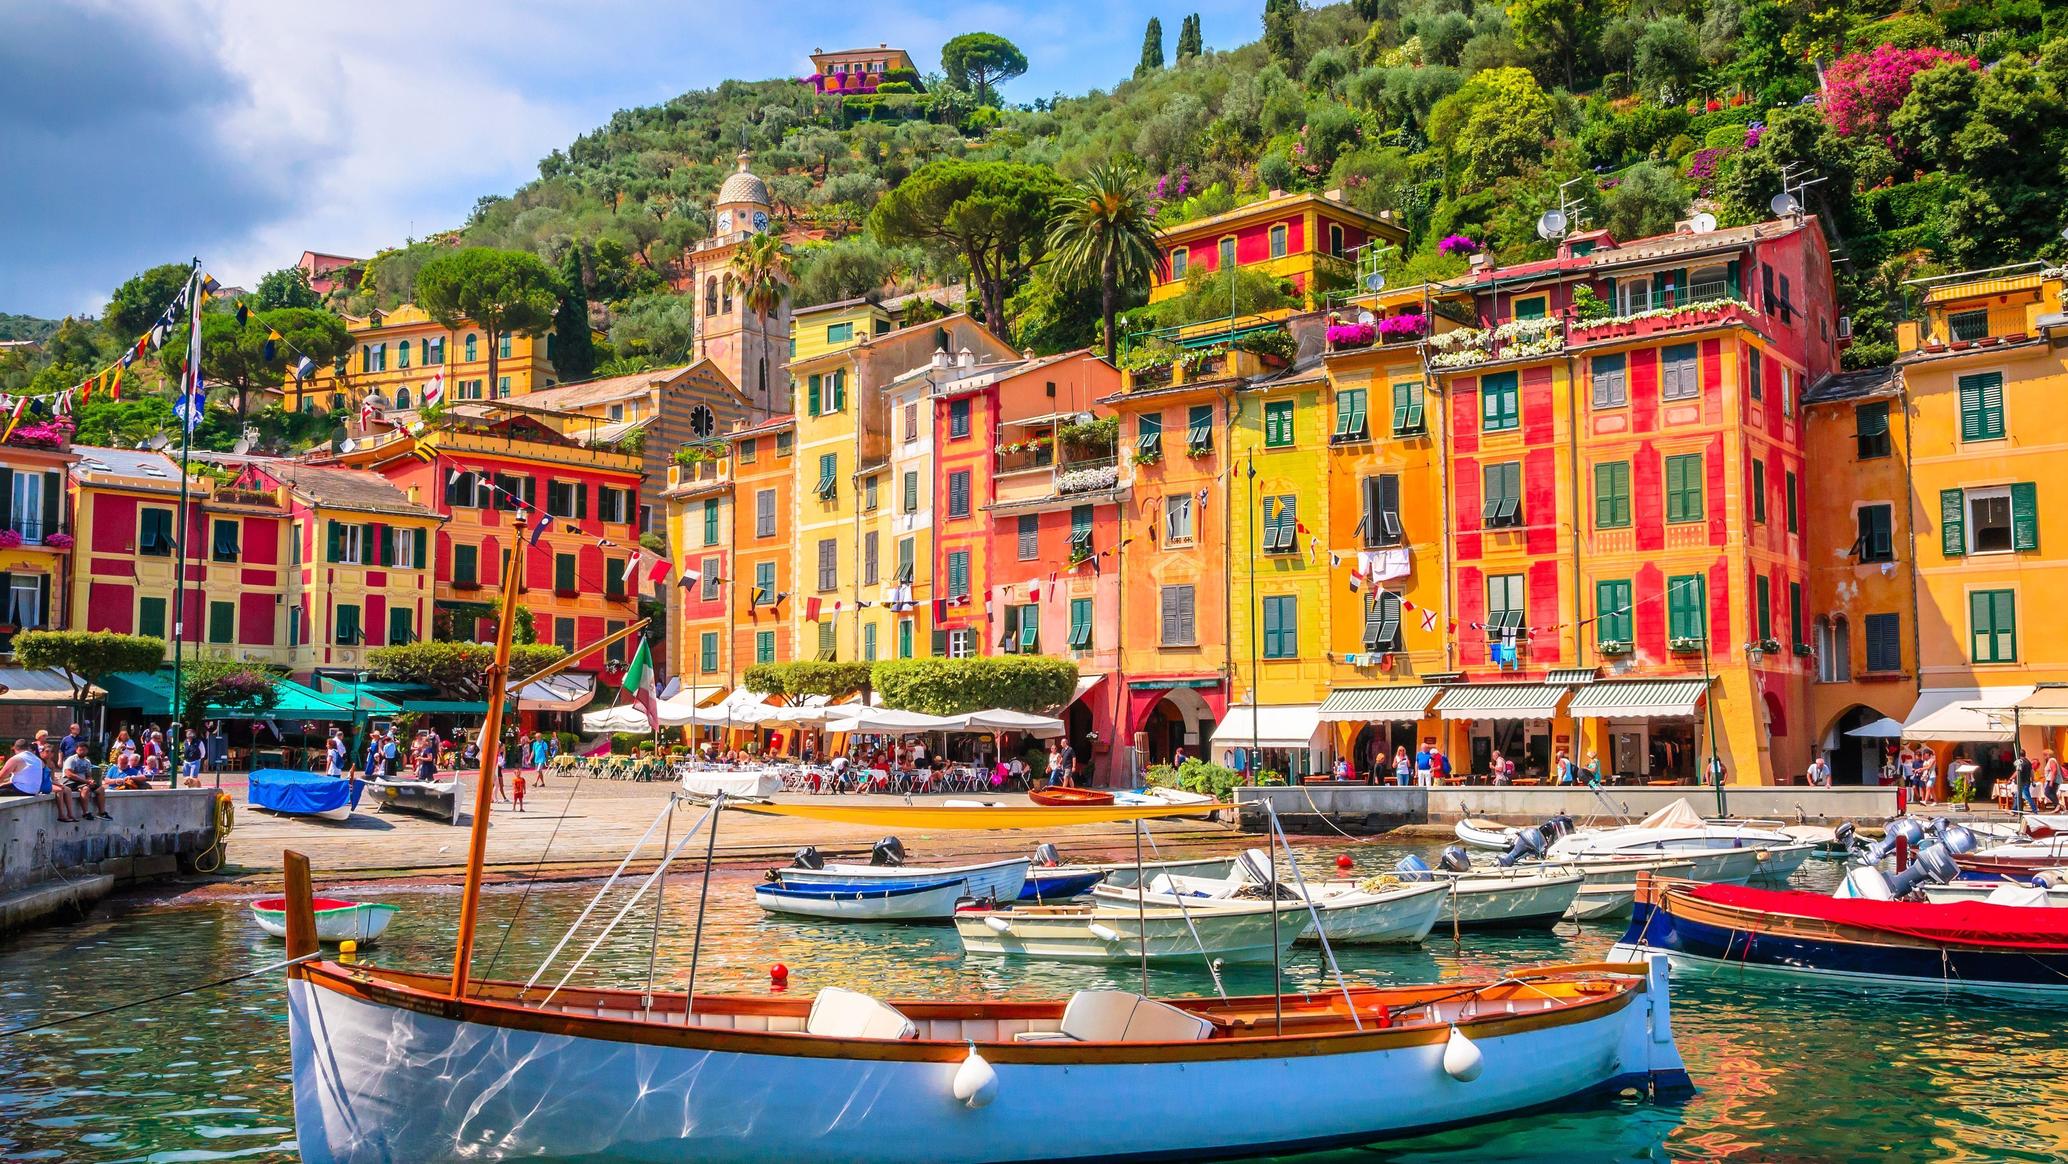 Vacanta in Genova si Portofino – 194 euro (zbor si cazare 4 nopti)